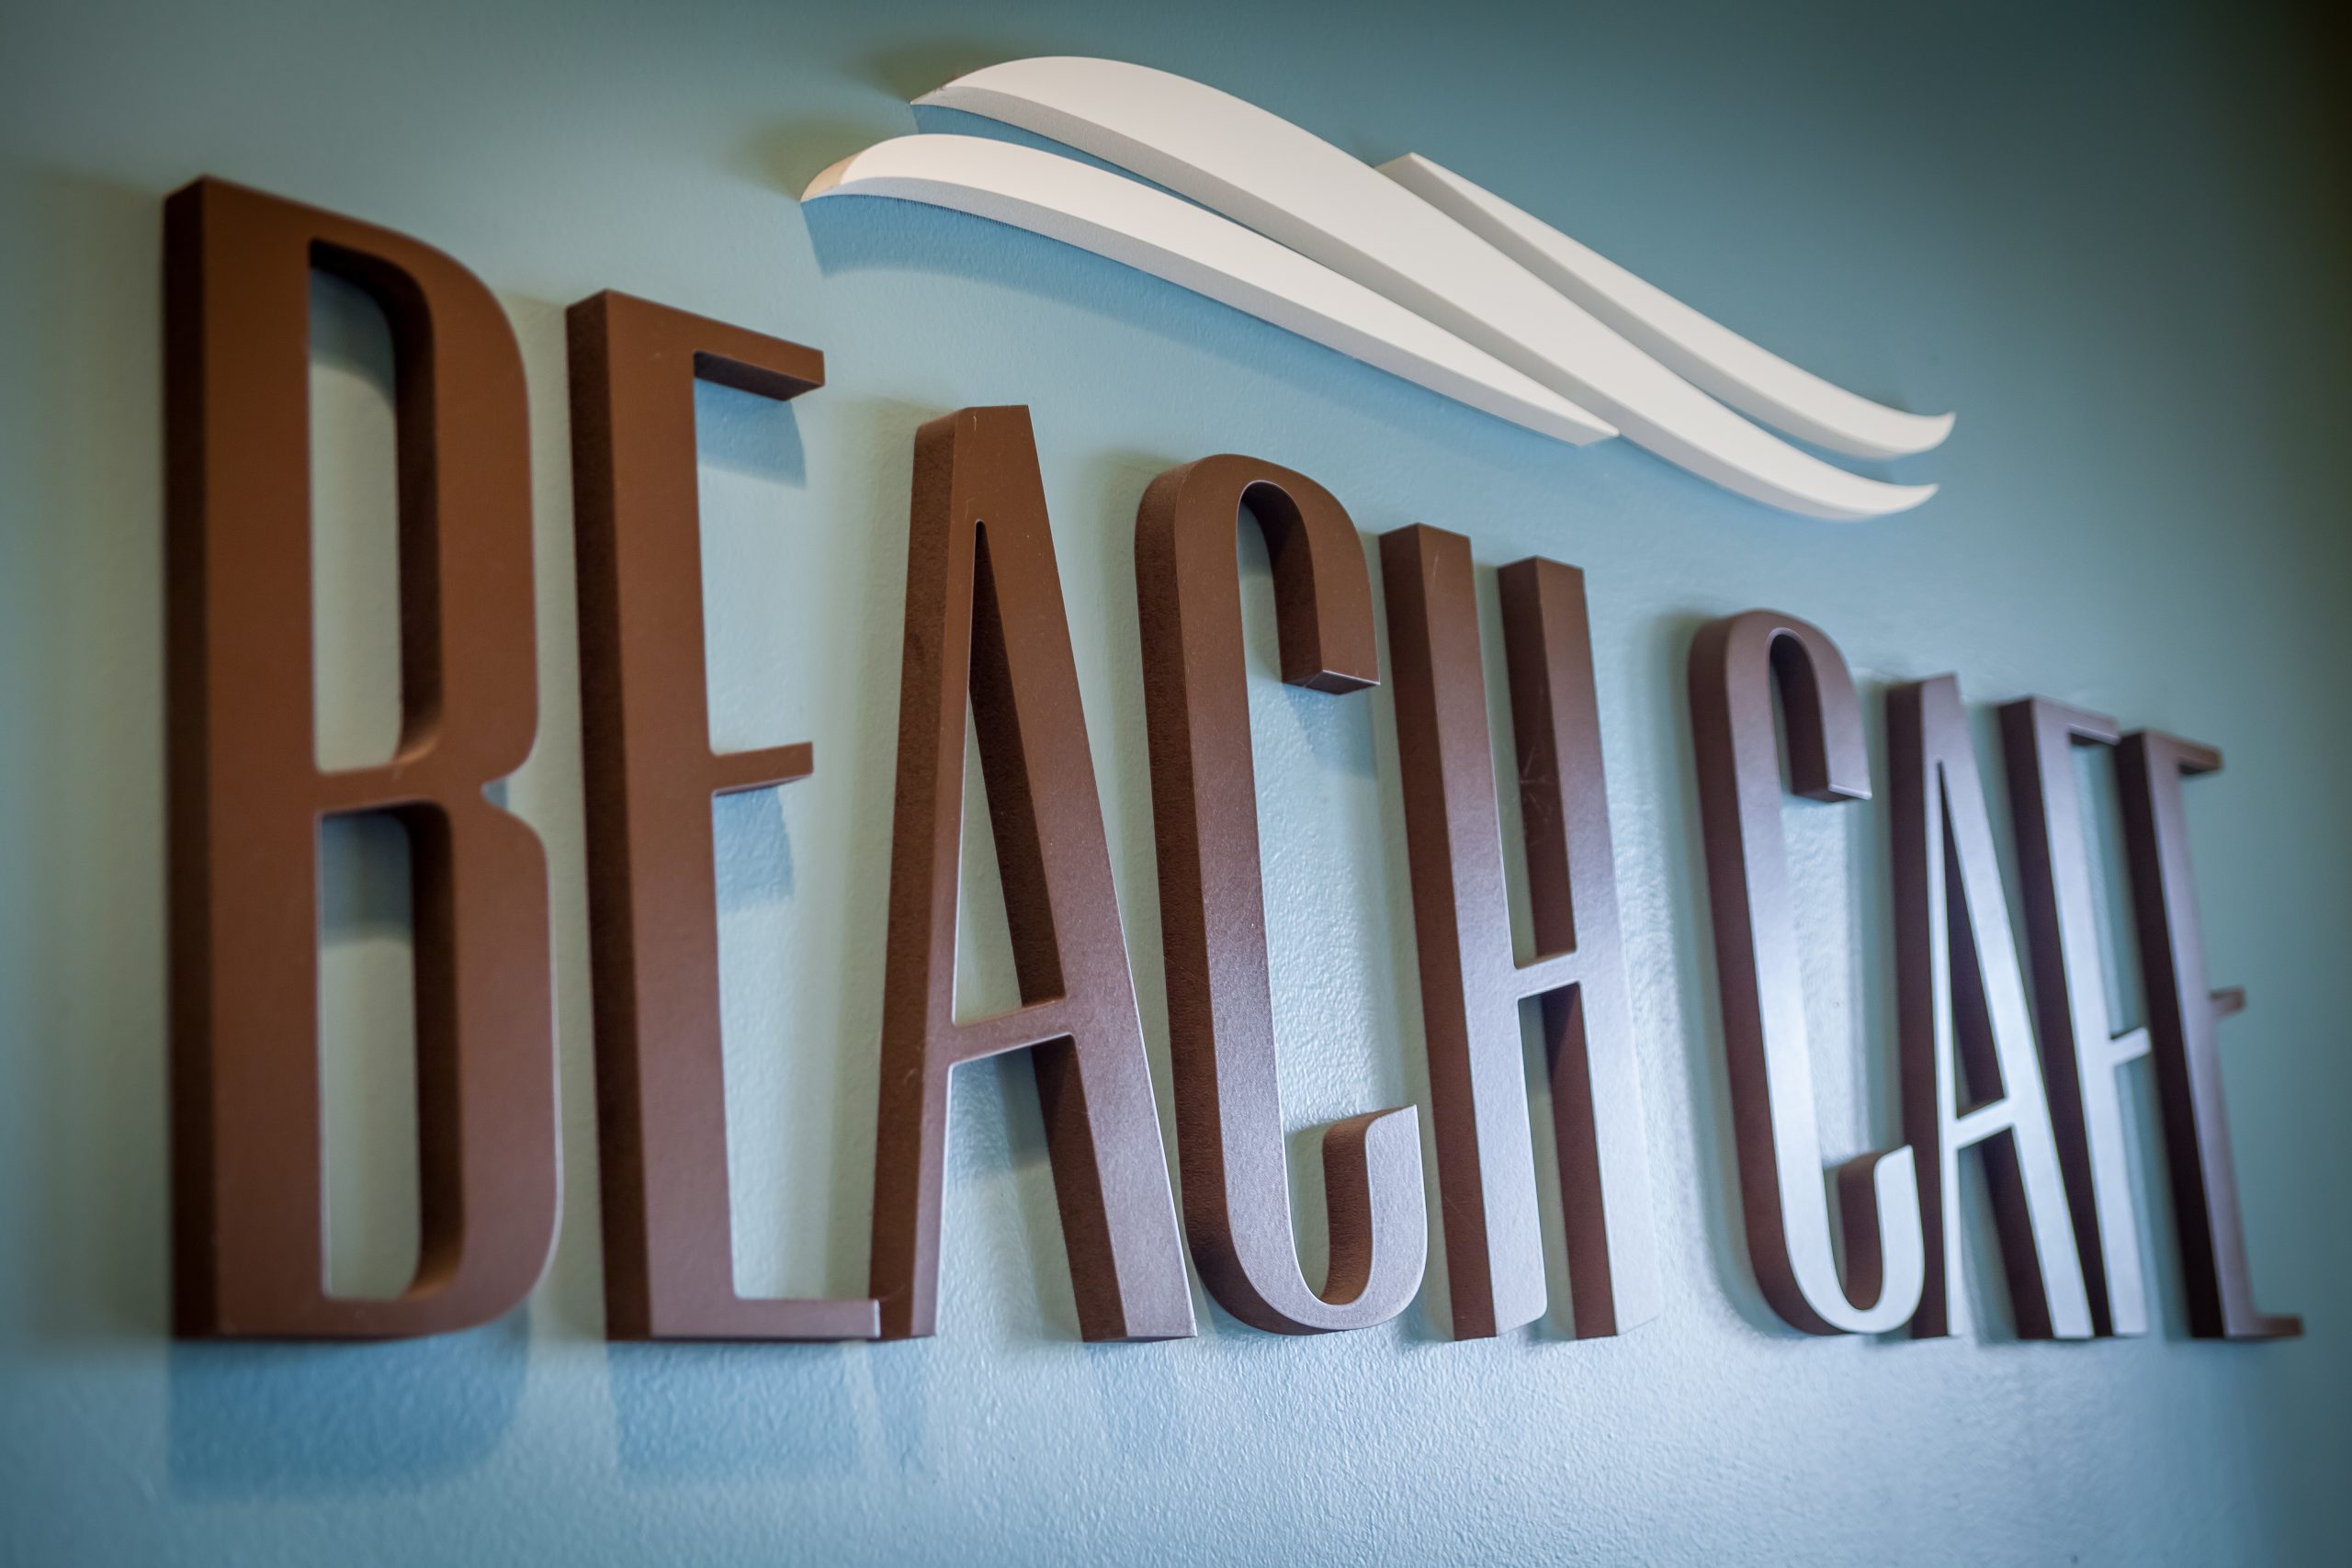 BEACH CAFE